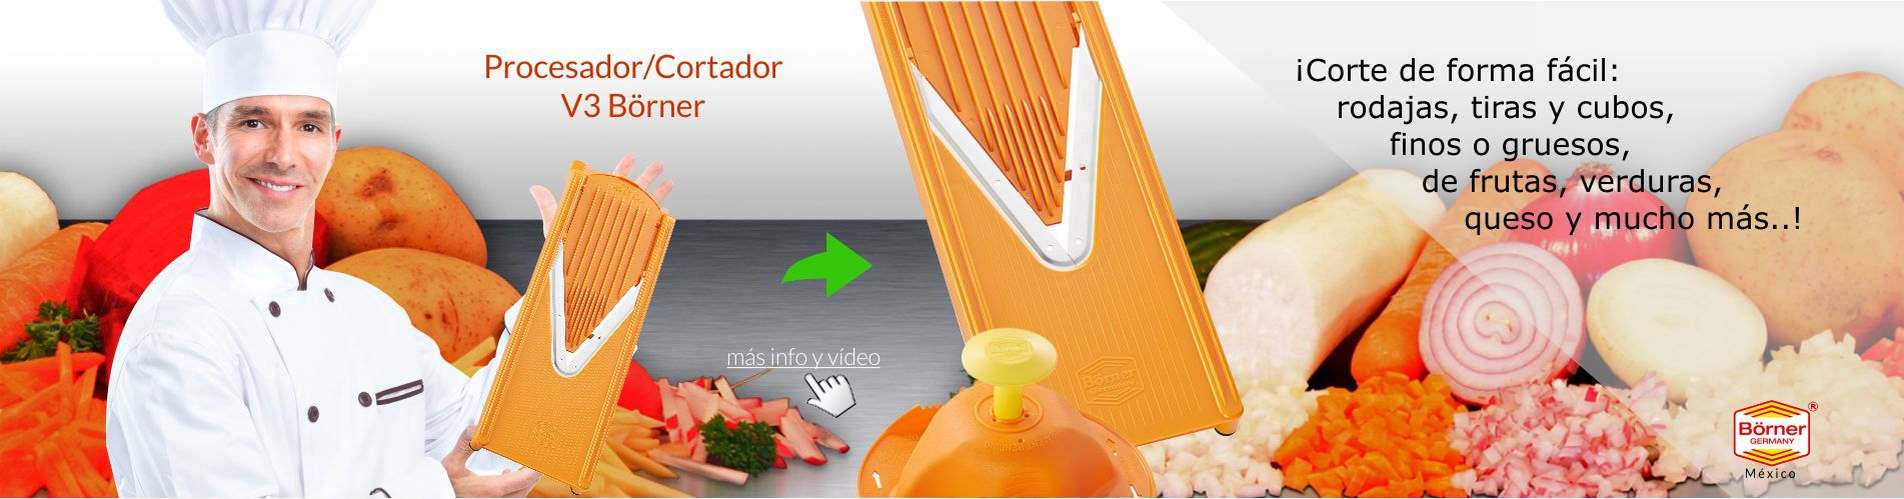 ¡Procesador/Cortador V3 Börner: Corte o rebane de forma fácil en rodajas, tiras o cubos, finos o gruesos de frutas, verduras, queso y mucho más!